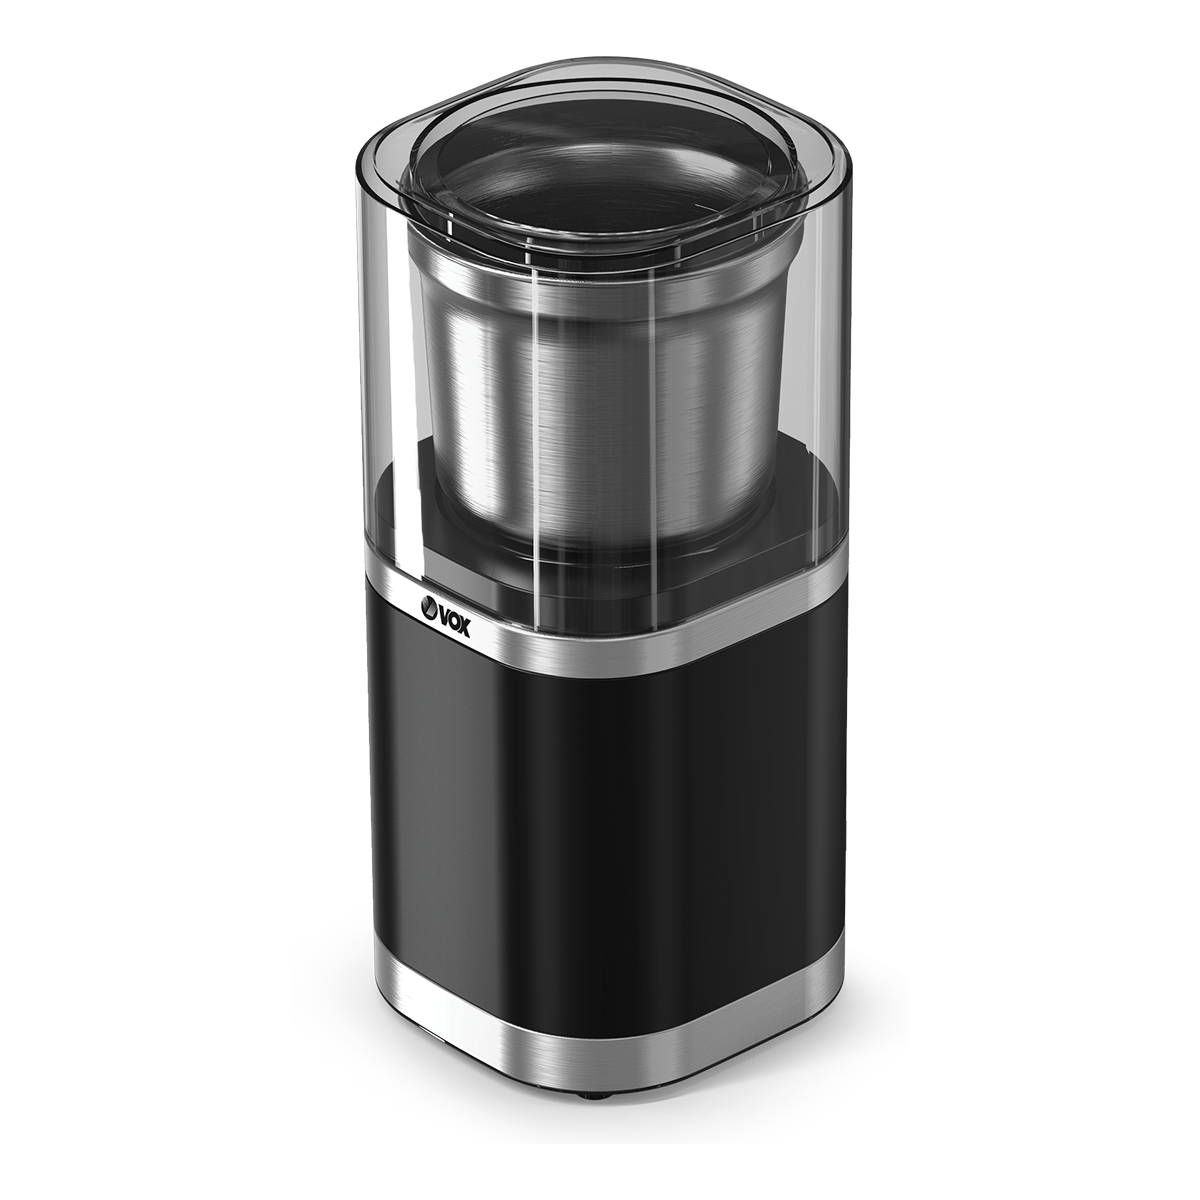 Coffee grinder CG9411 